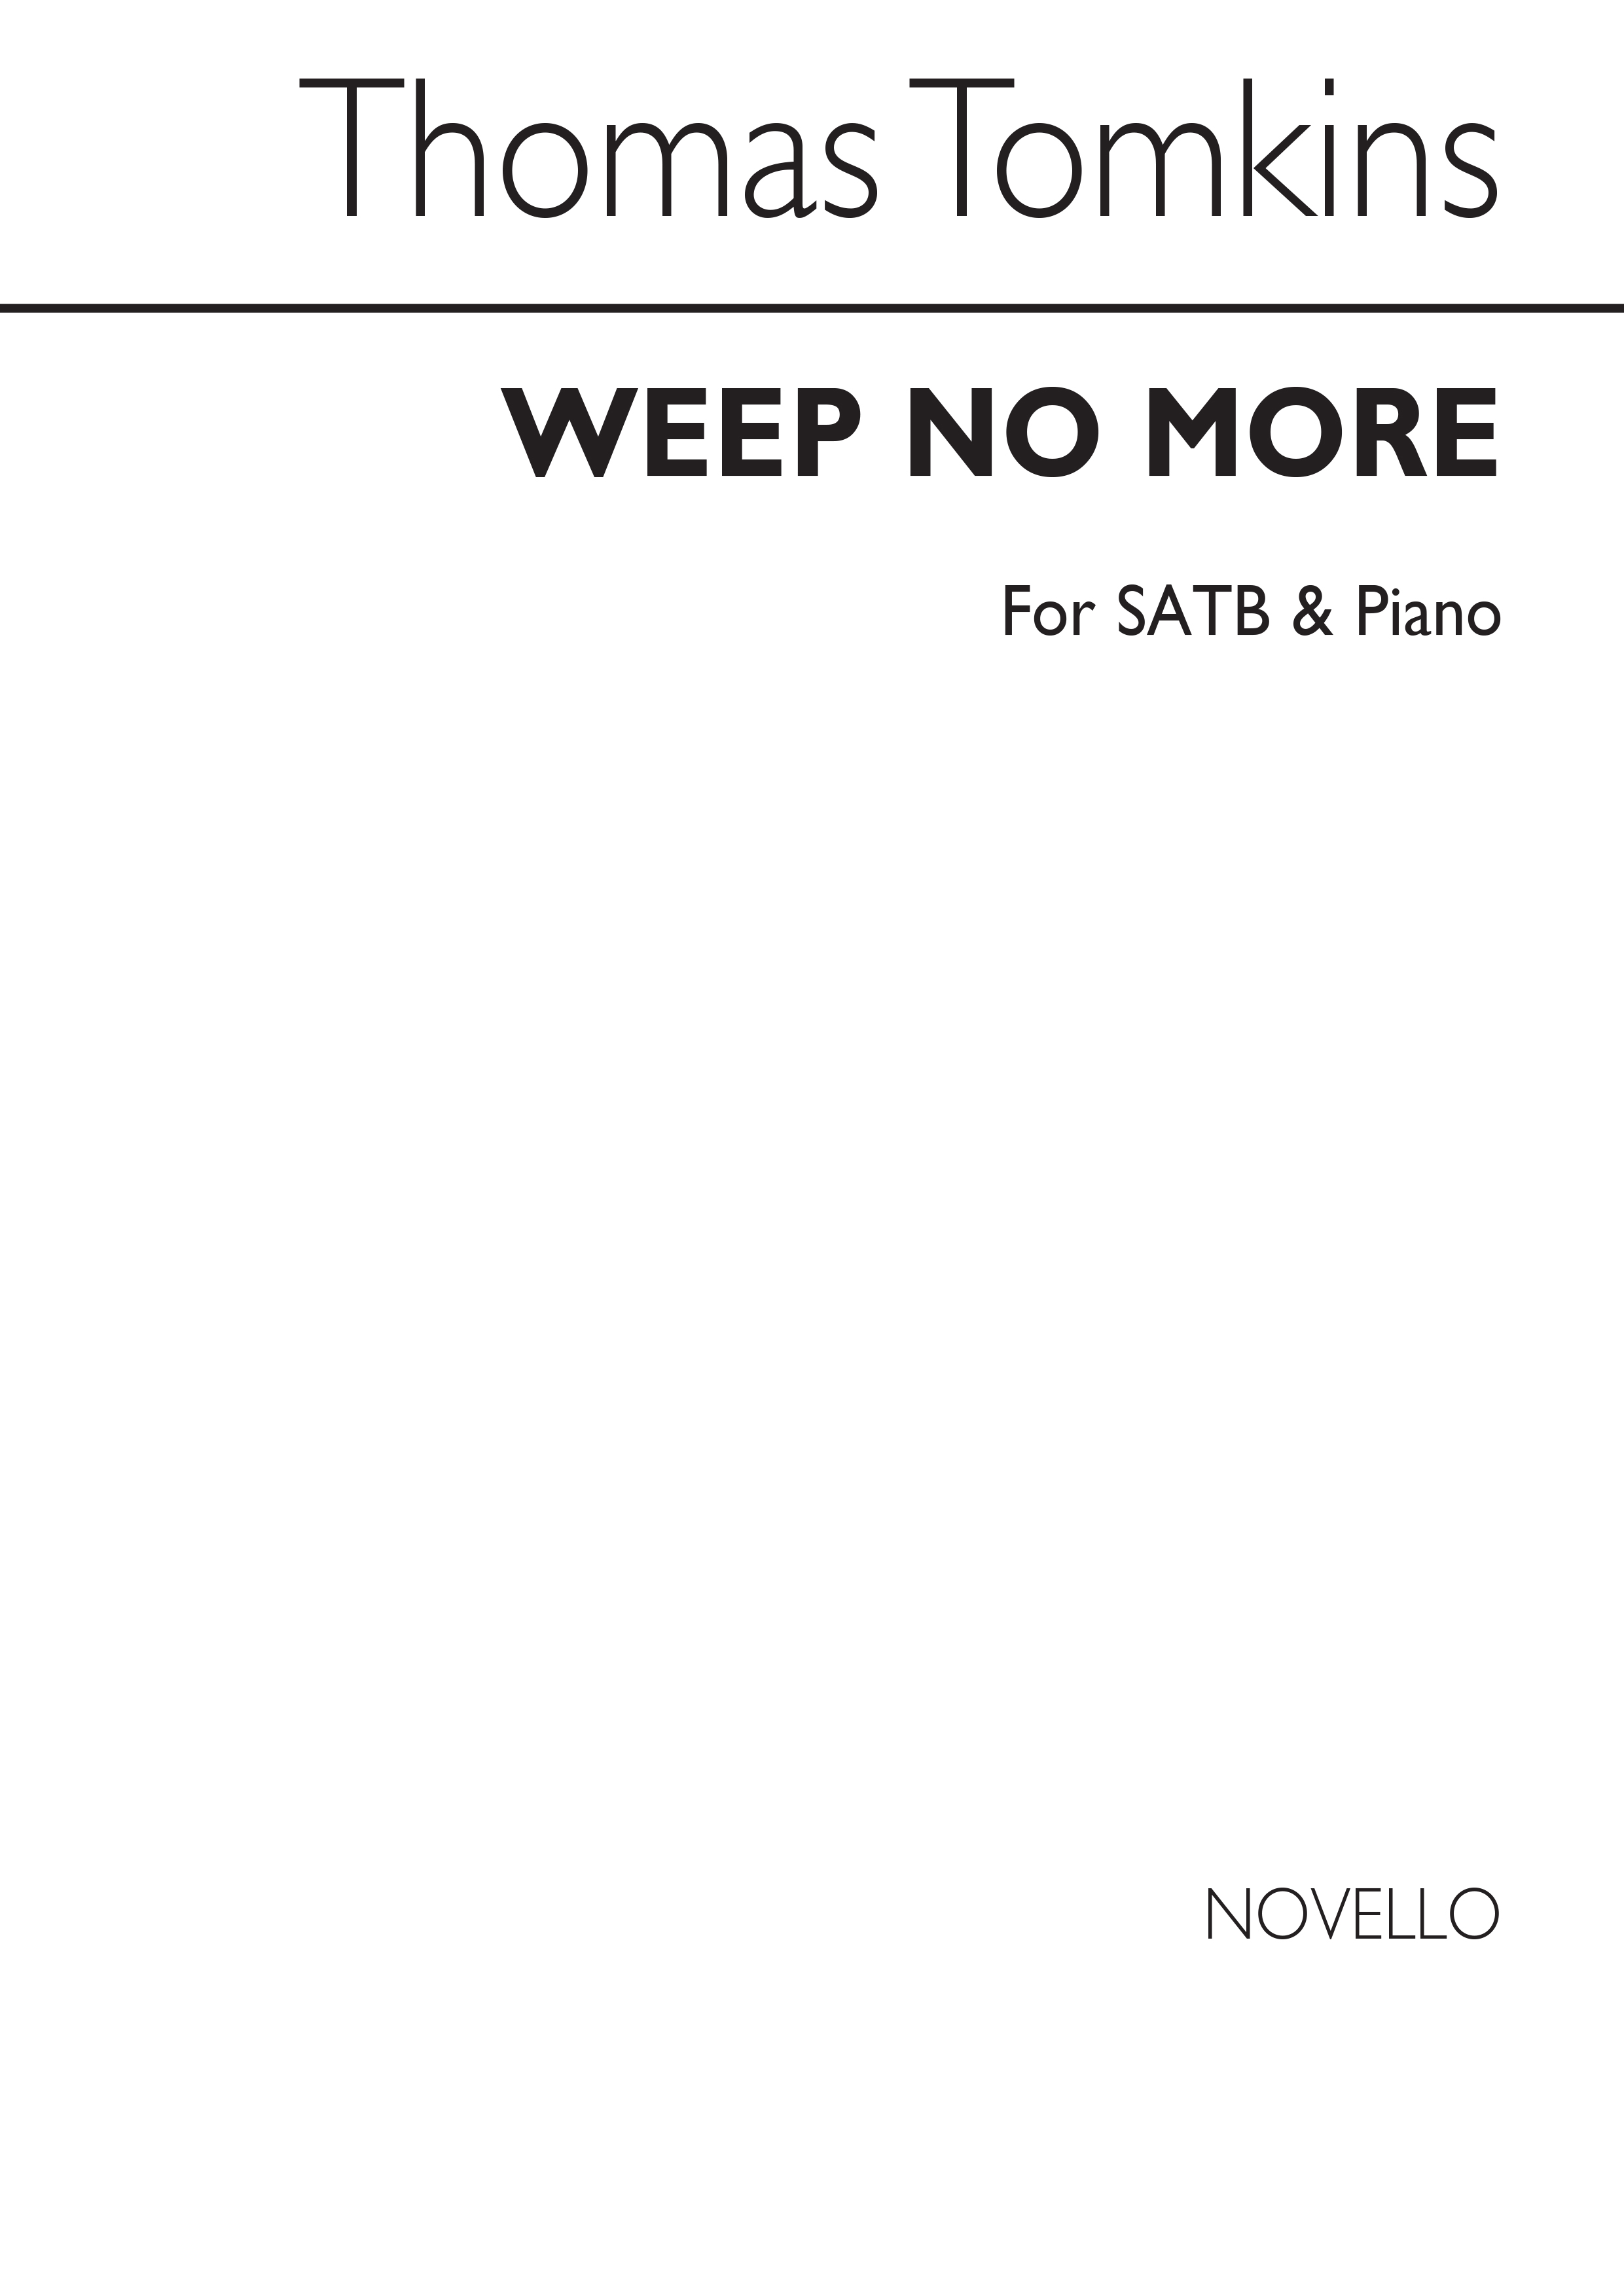 Thomas Tomkins: Weep No More Satb/Piano